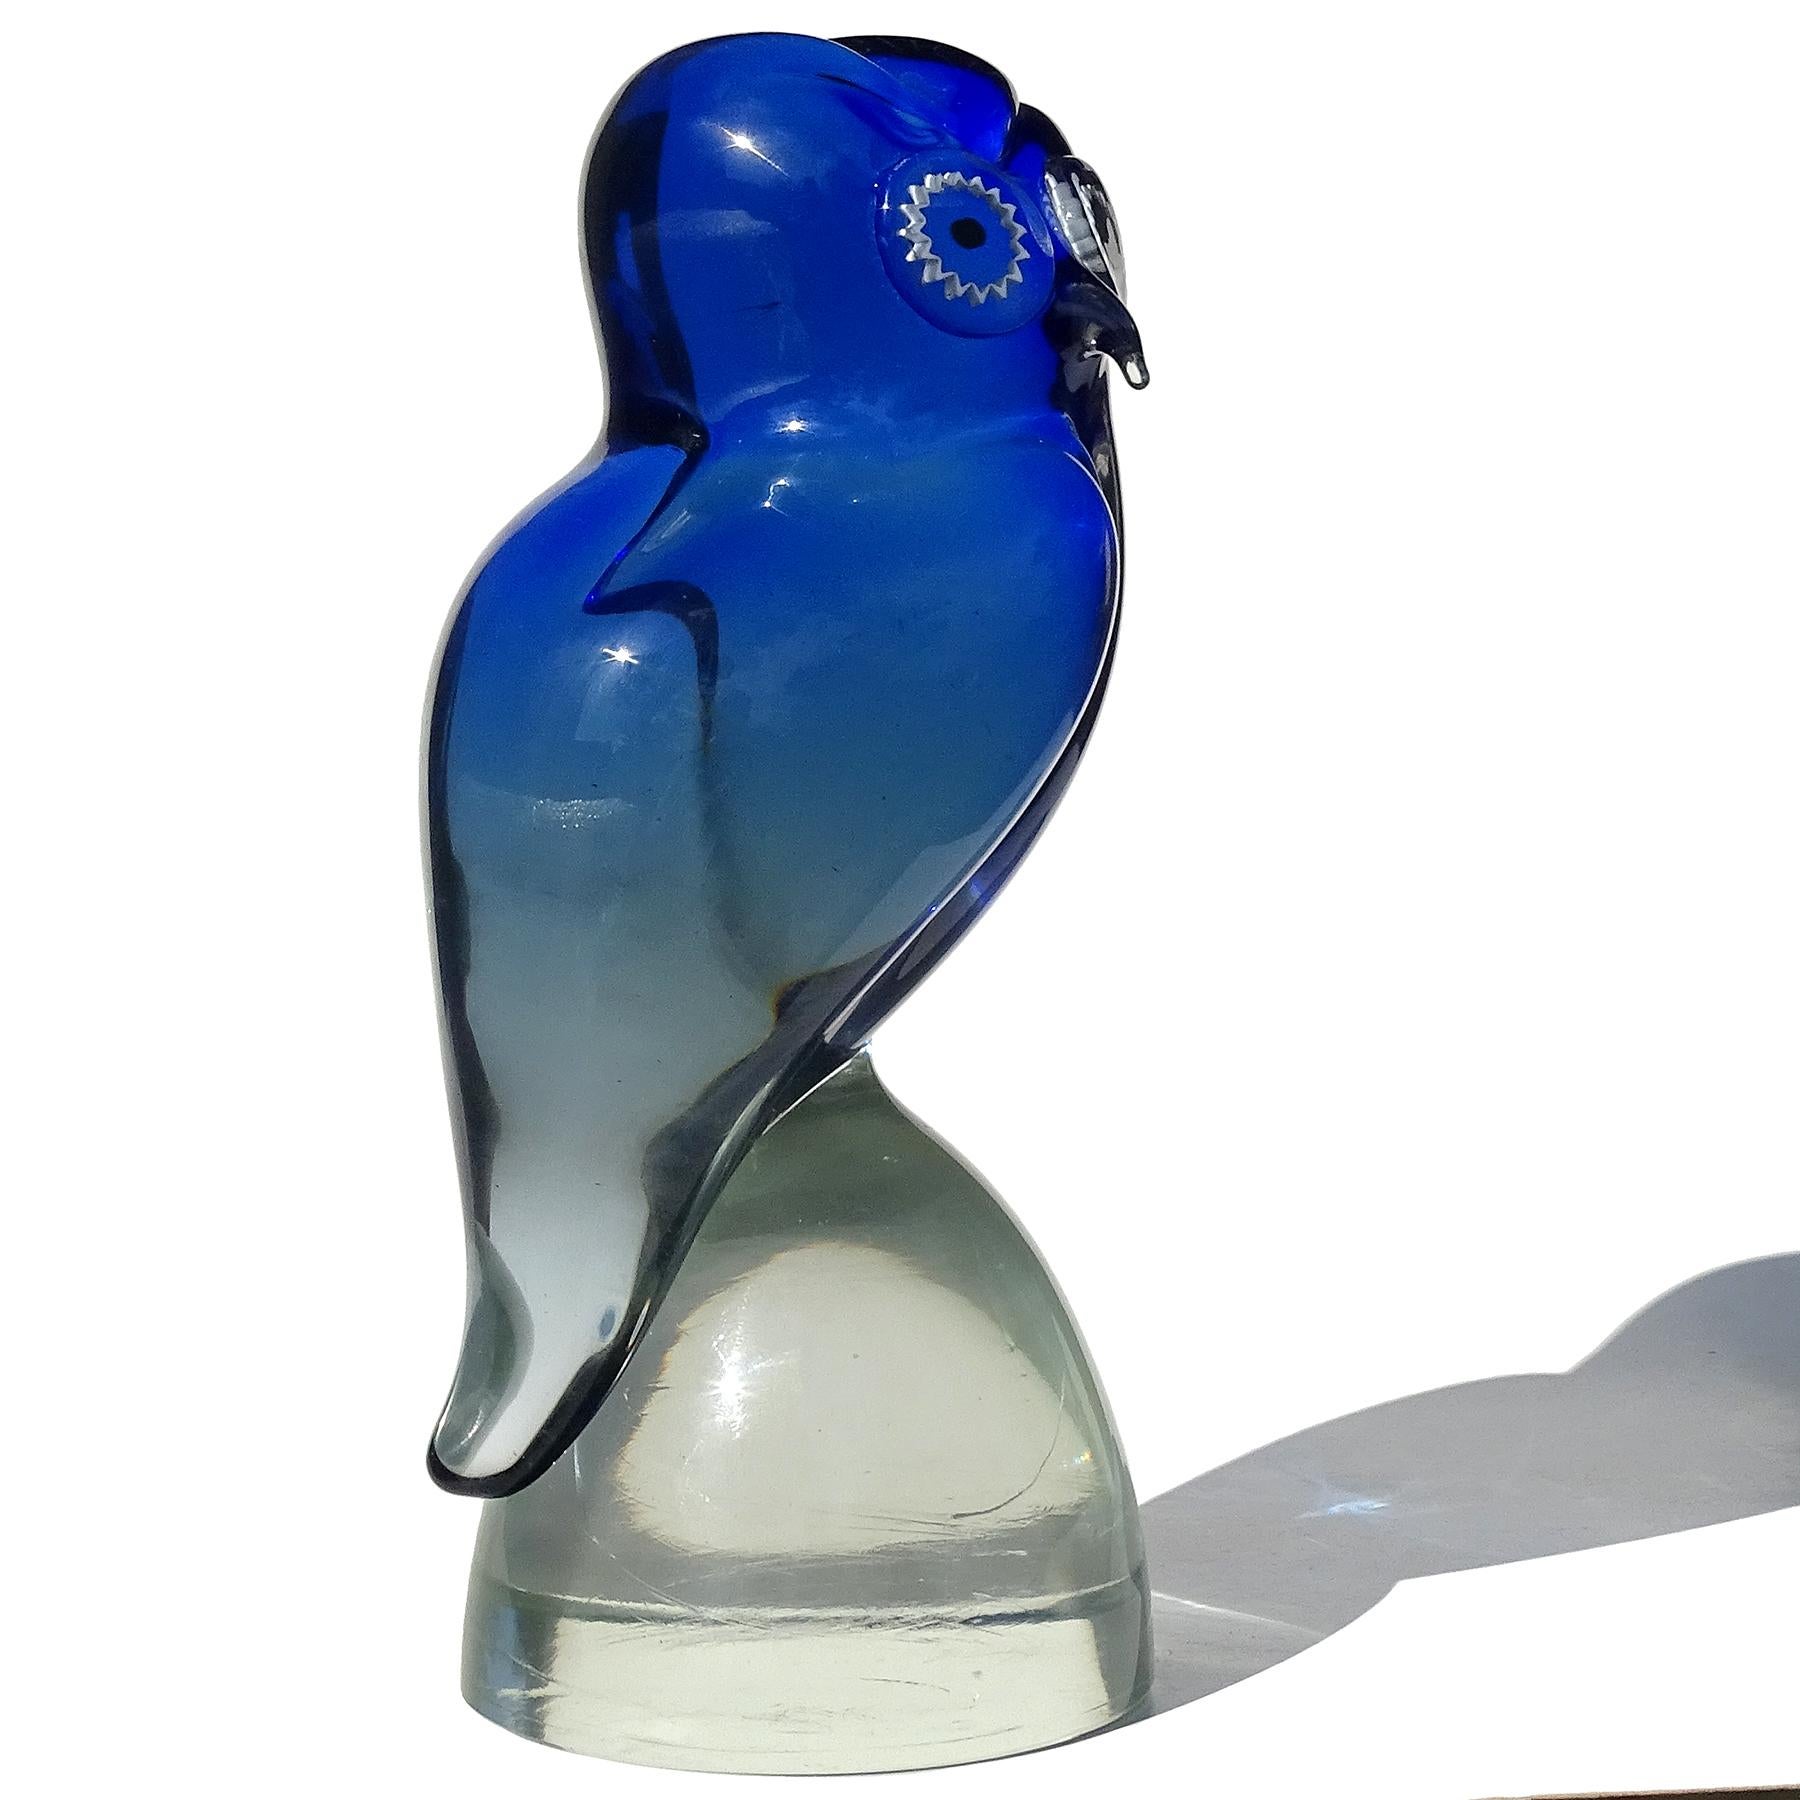 Schöne Vintage Murano mundgeblasen Sommerso kobaltblau bis klar italienische Kunst Glas Eule Vogel Figur, Skulptur. Dokumentiert bei der Firma Salviati. Ich habe schon mehrere mit Labels und Unterschriften besessen. Die Eule hat weiße, klare